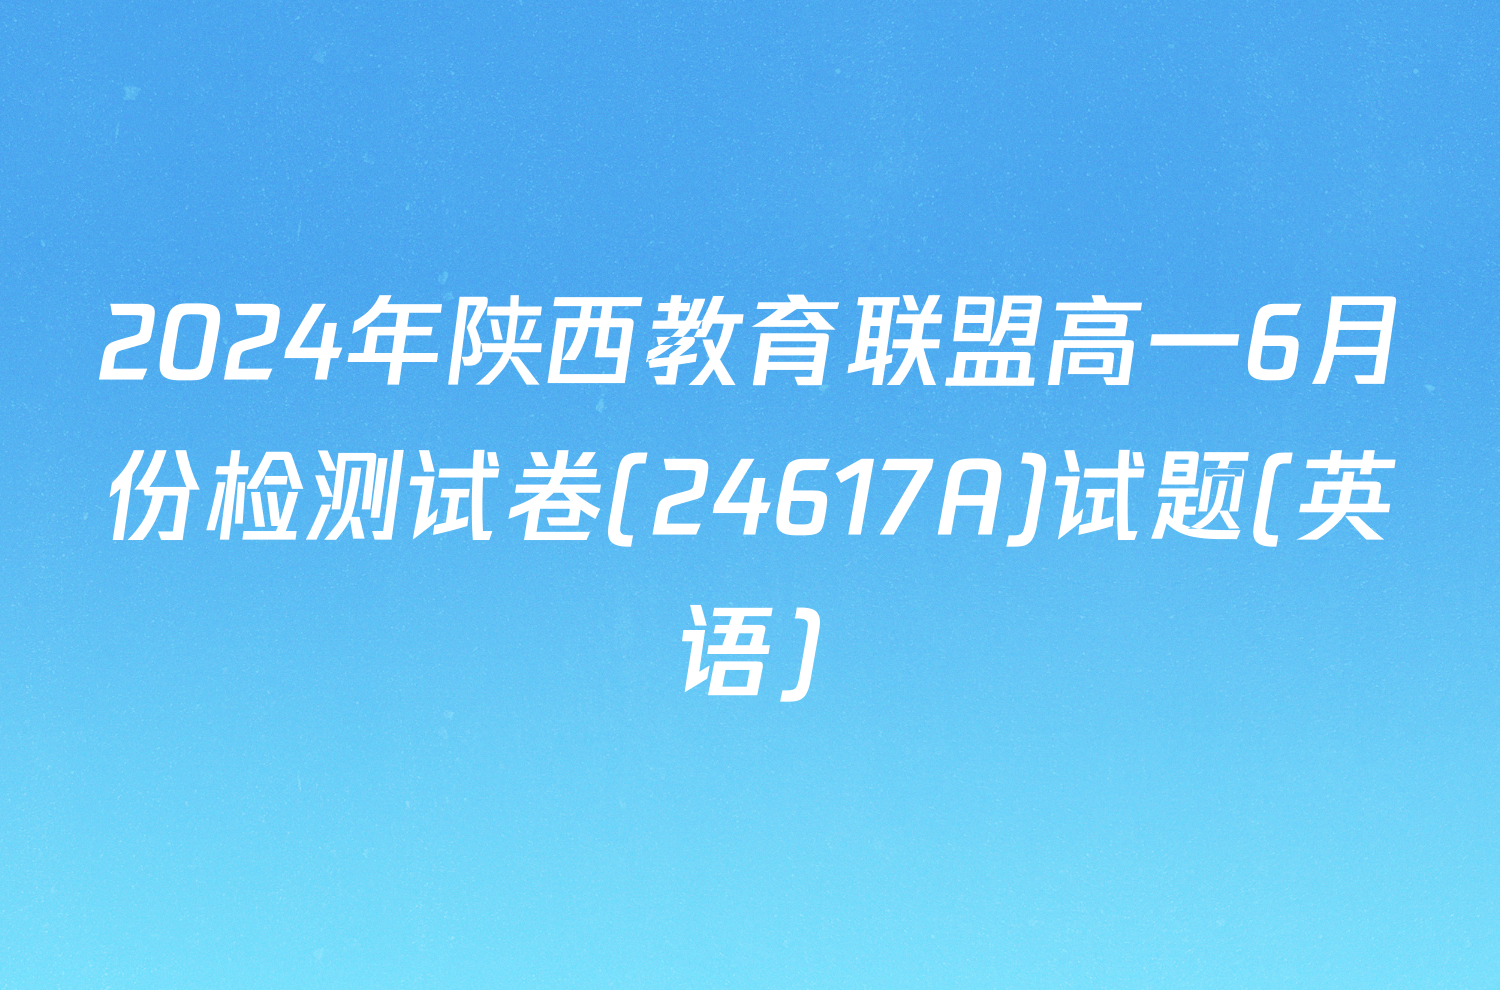 2024年陕西教育联盟高一6月份检测试卷(24617A)试题(英语)